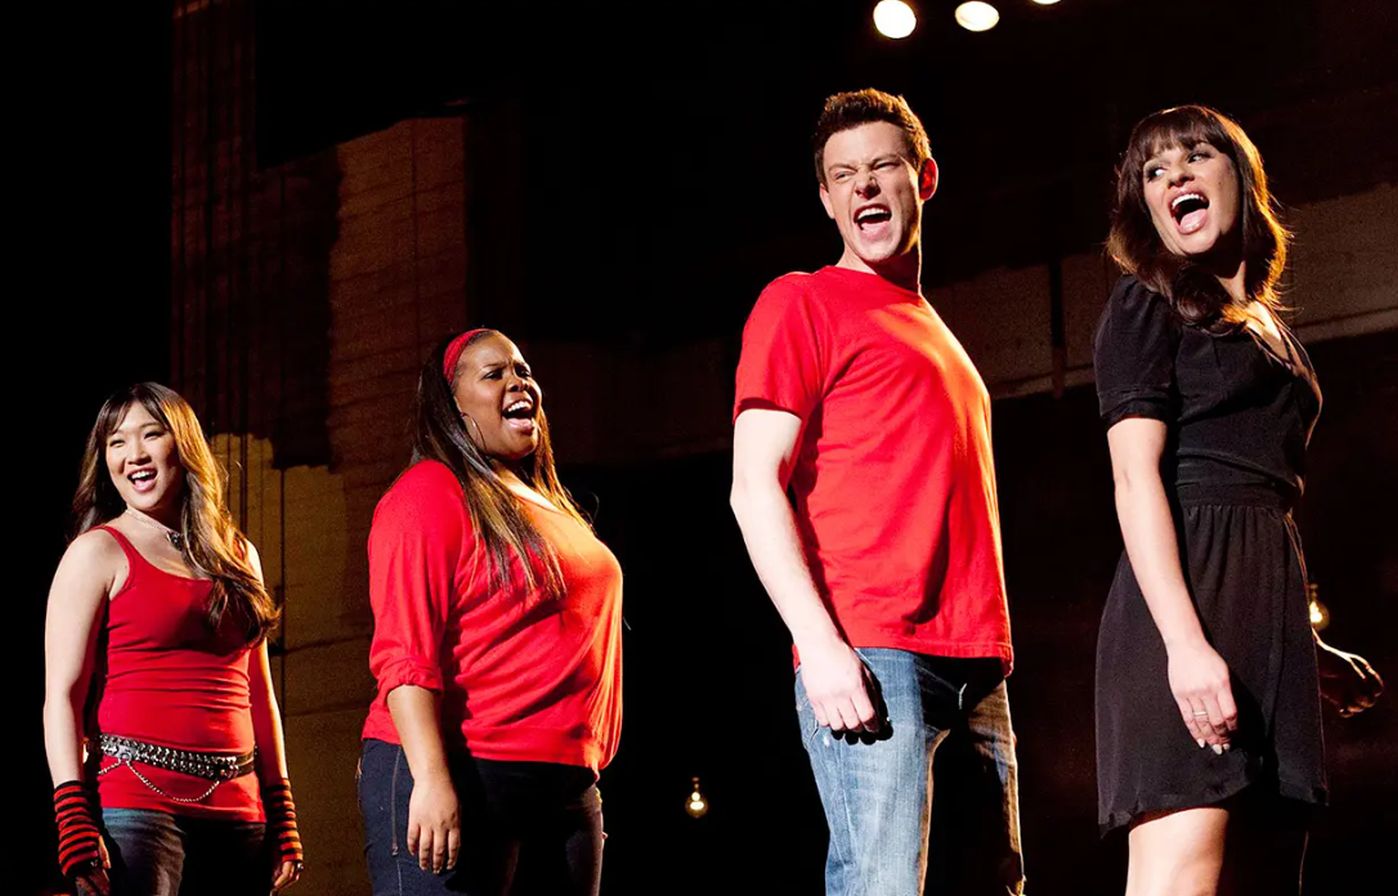 La maledizione di Glee: ecco quando e dove vedere la docuserie sul cult musical 'maledetto'